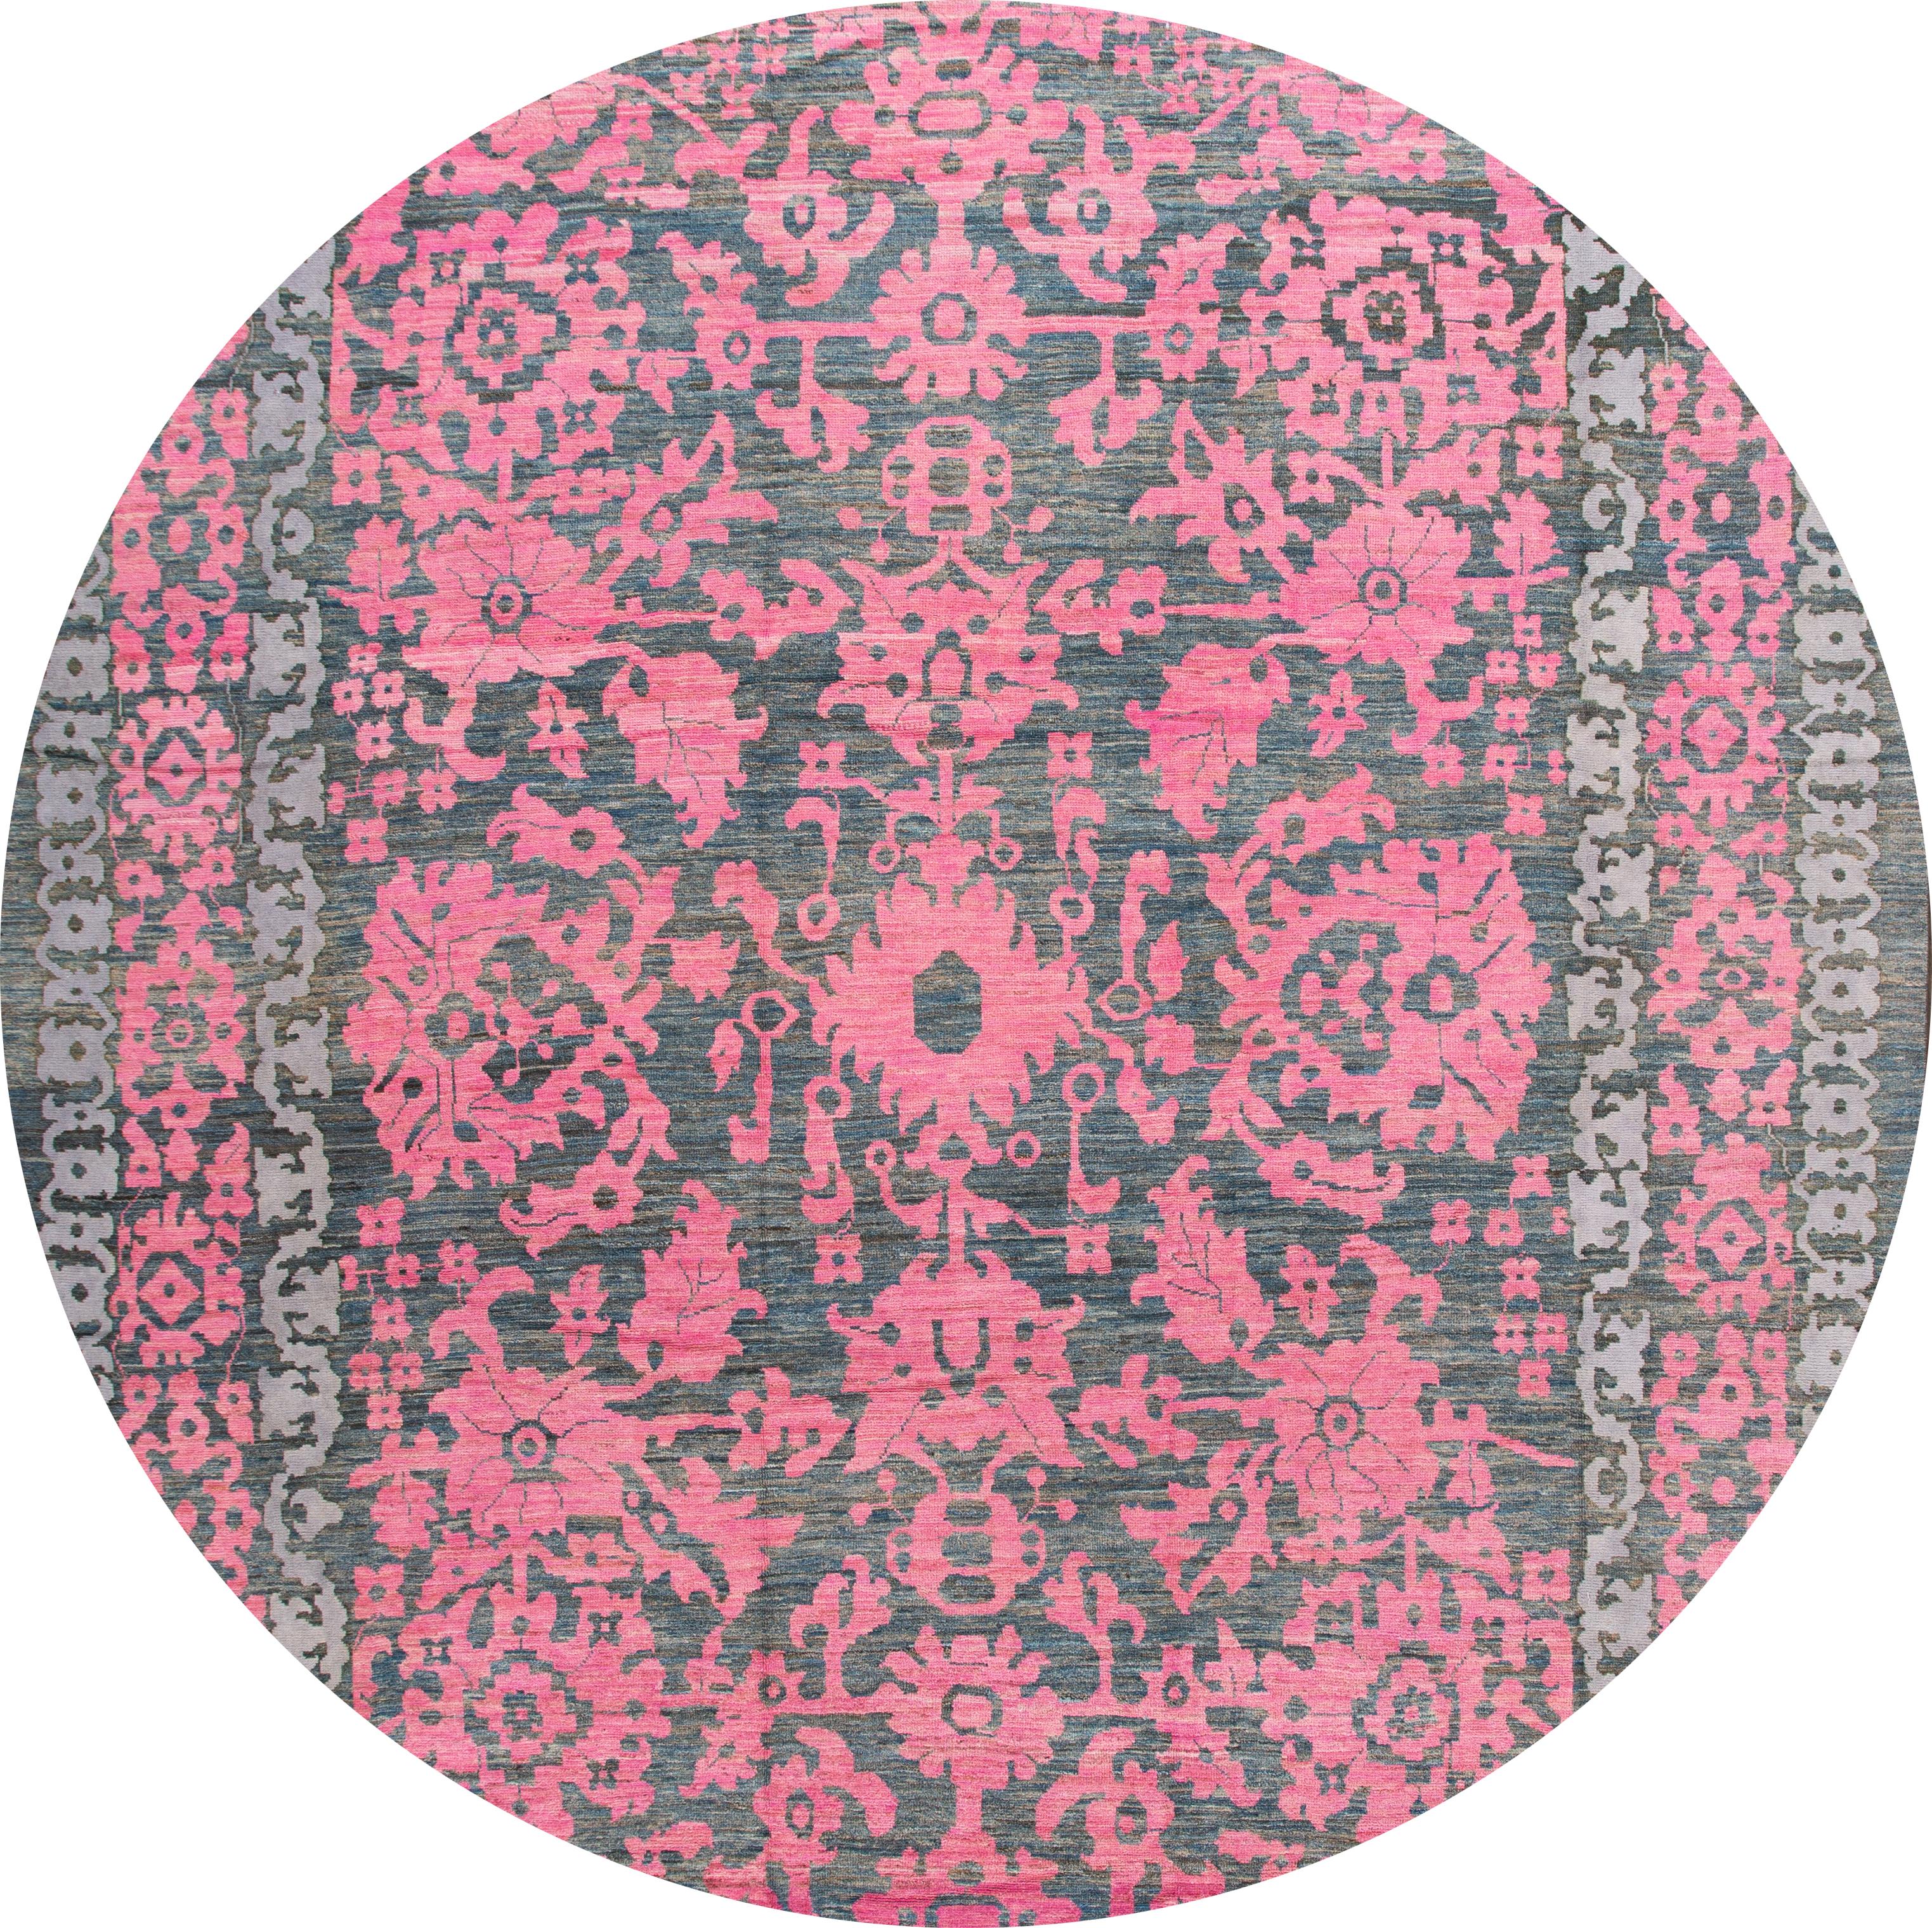 Magnifique tapis contemporain surdimensionné en laine Oushak nouée à la main avec un motif floral botanique sur un champ gris. Des accents de rose dans toute la pièce. 

Ce tapis mesure 13' 5